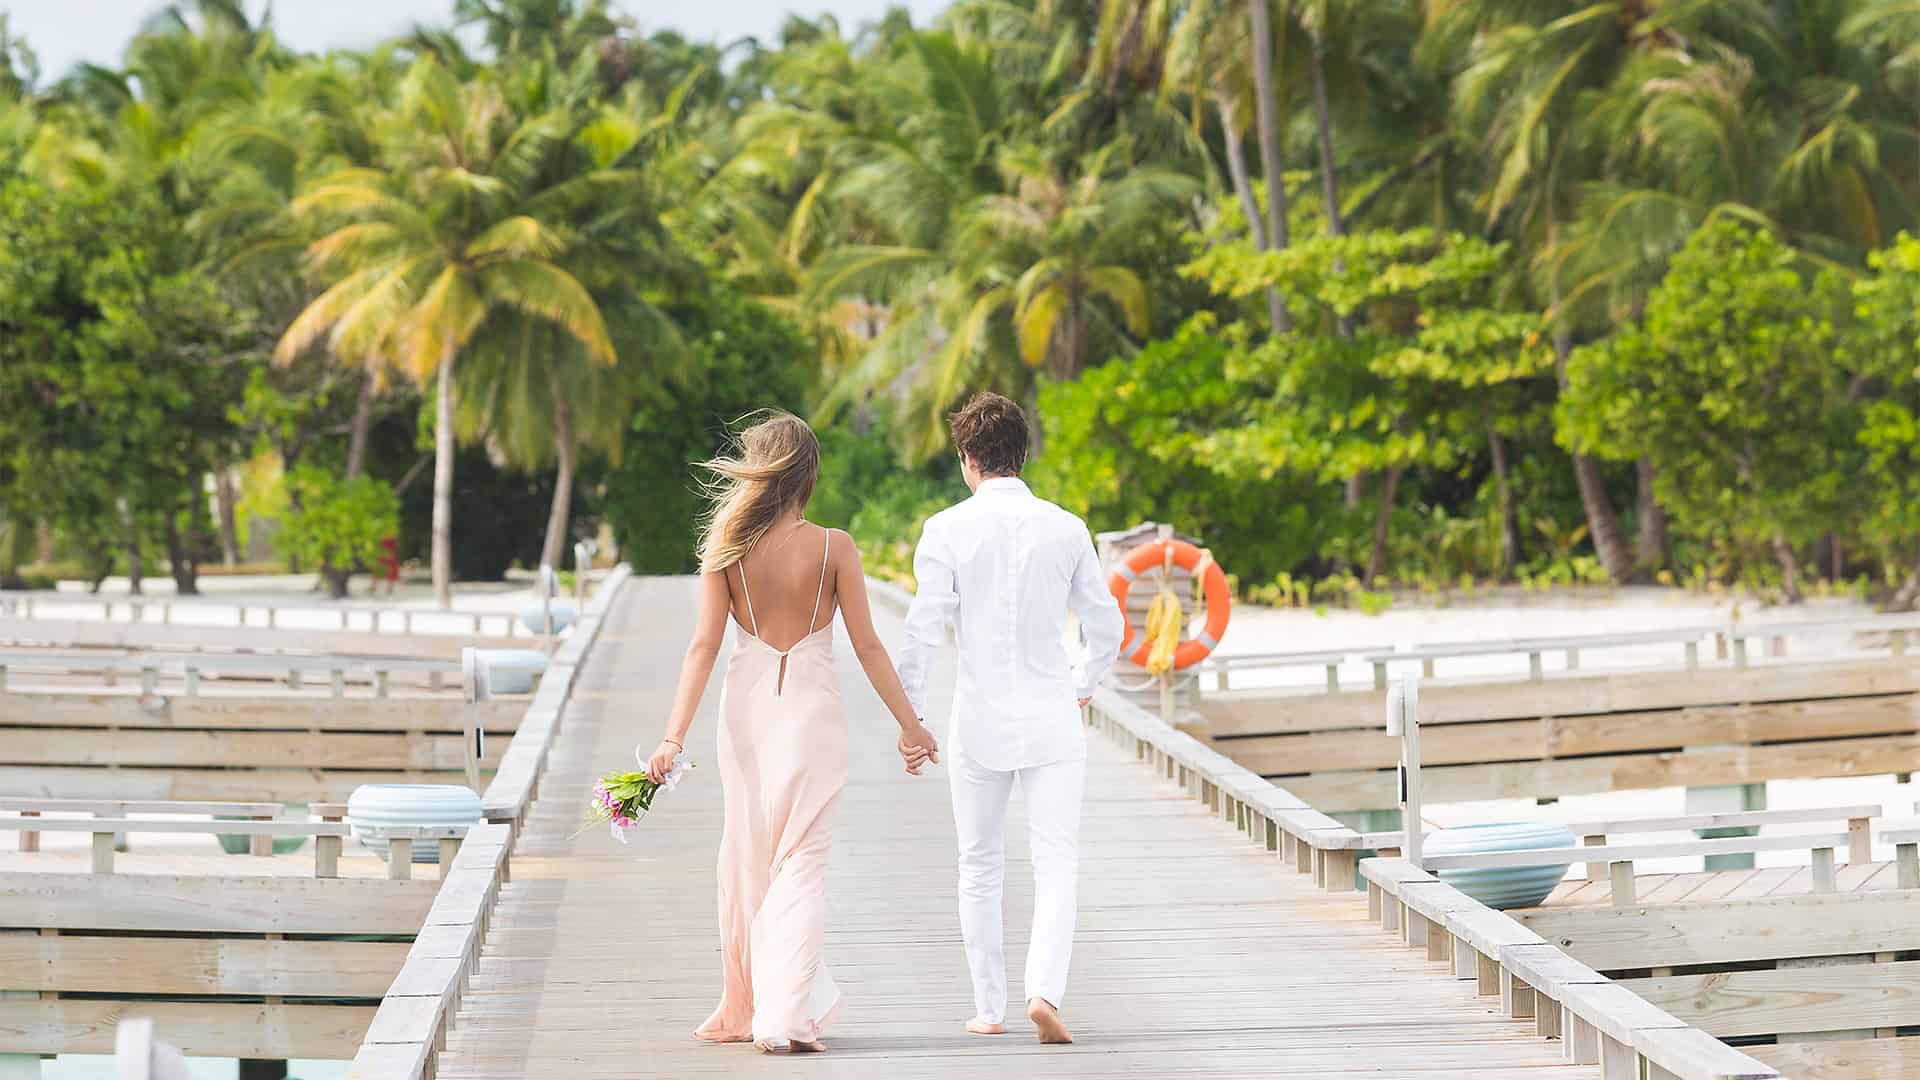 La novia y el novio caminan de la mano por un pasillo de bodas en la playa con palmeras.